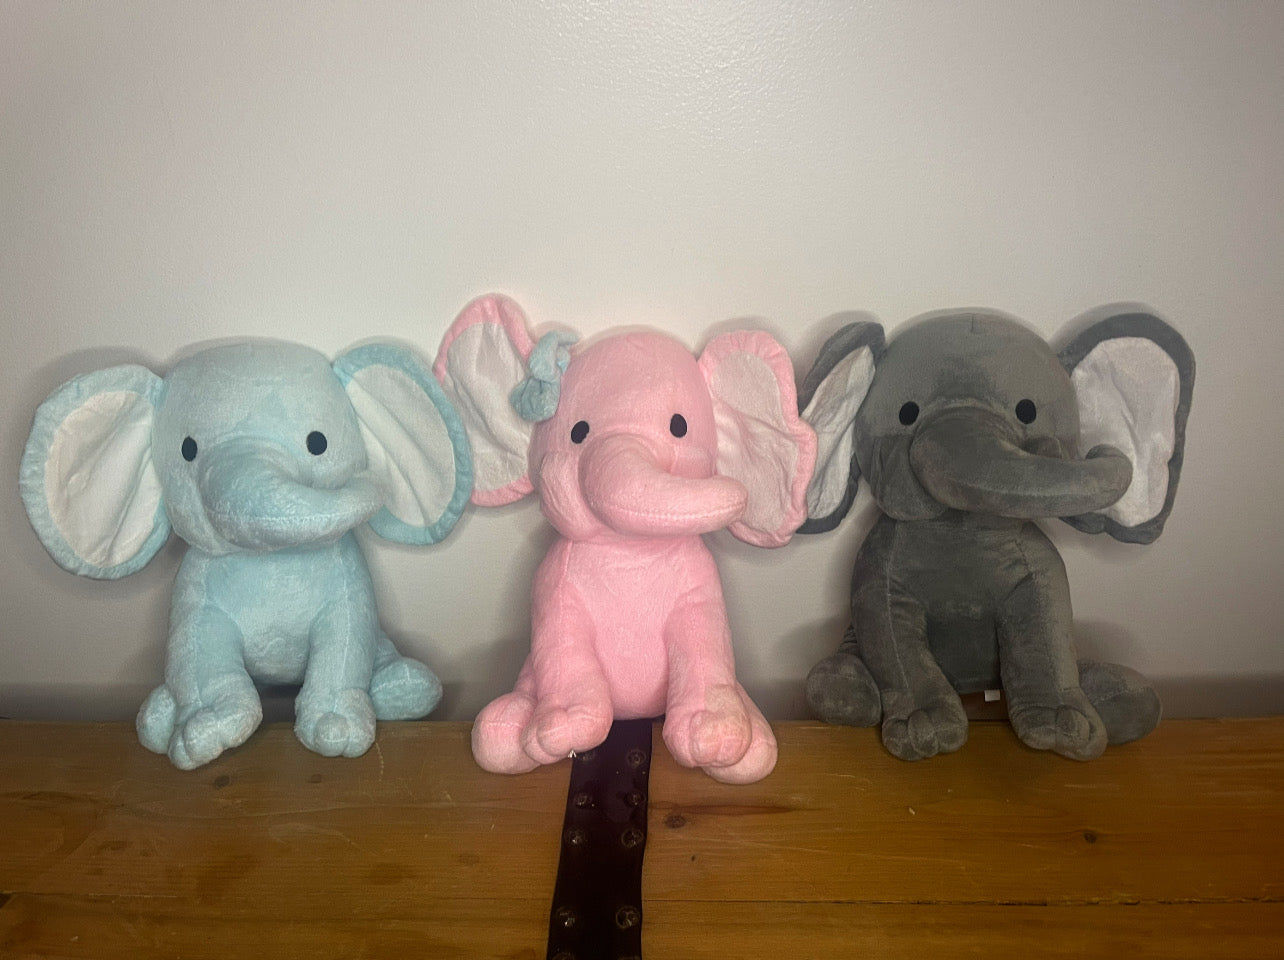 Plush toy Baby Birth Stat Elephants Blanks